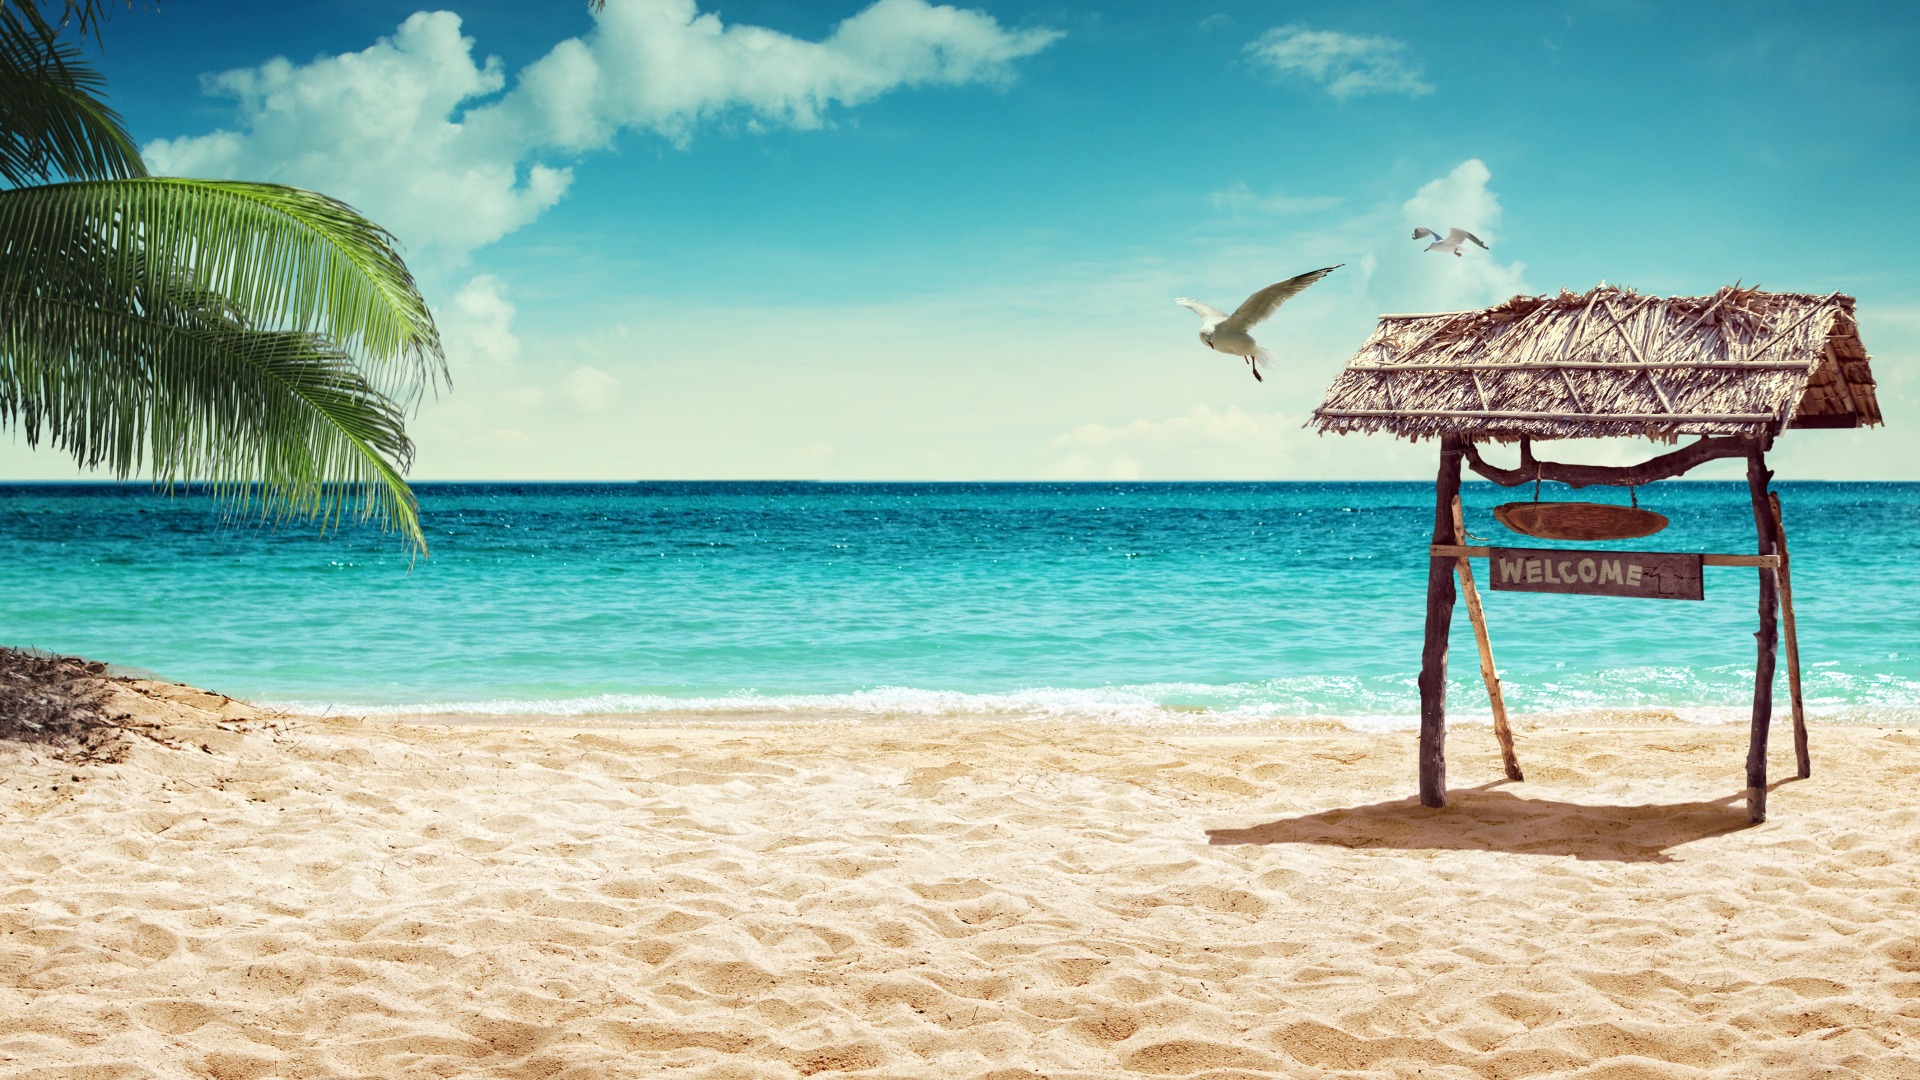 从海边来 带着阳光和海的味道 夏日沙滩享受日光浴图片壁纸